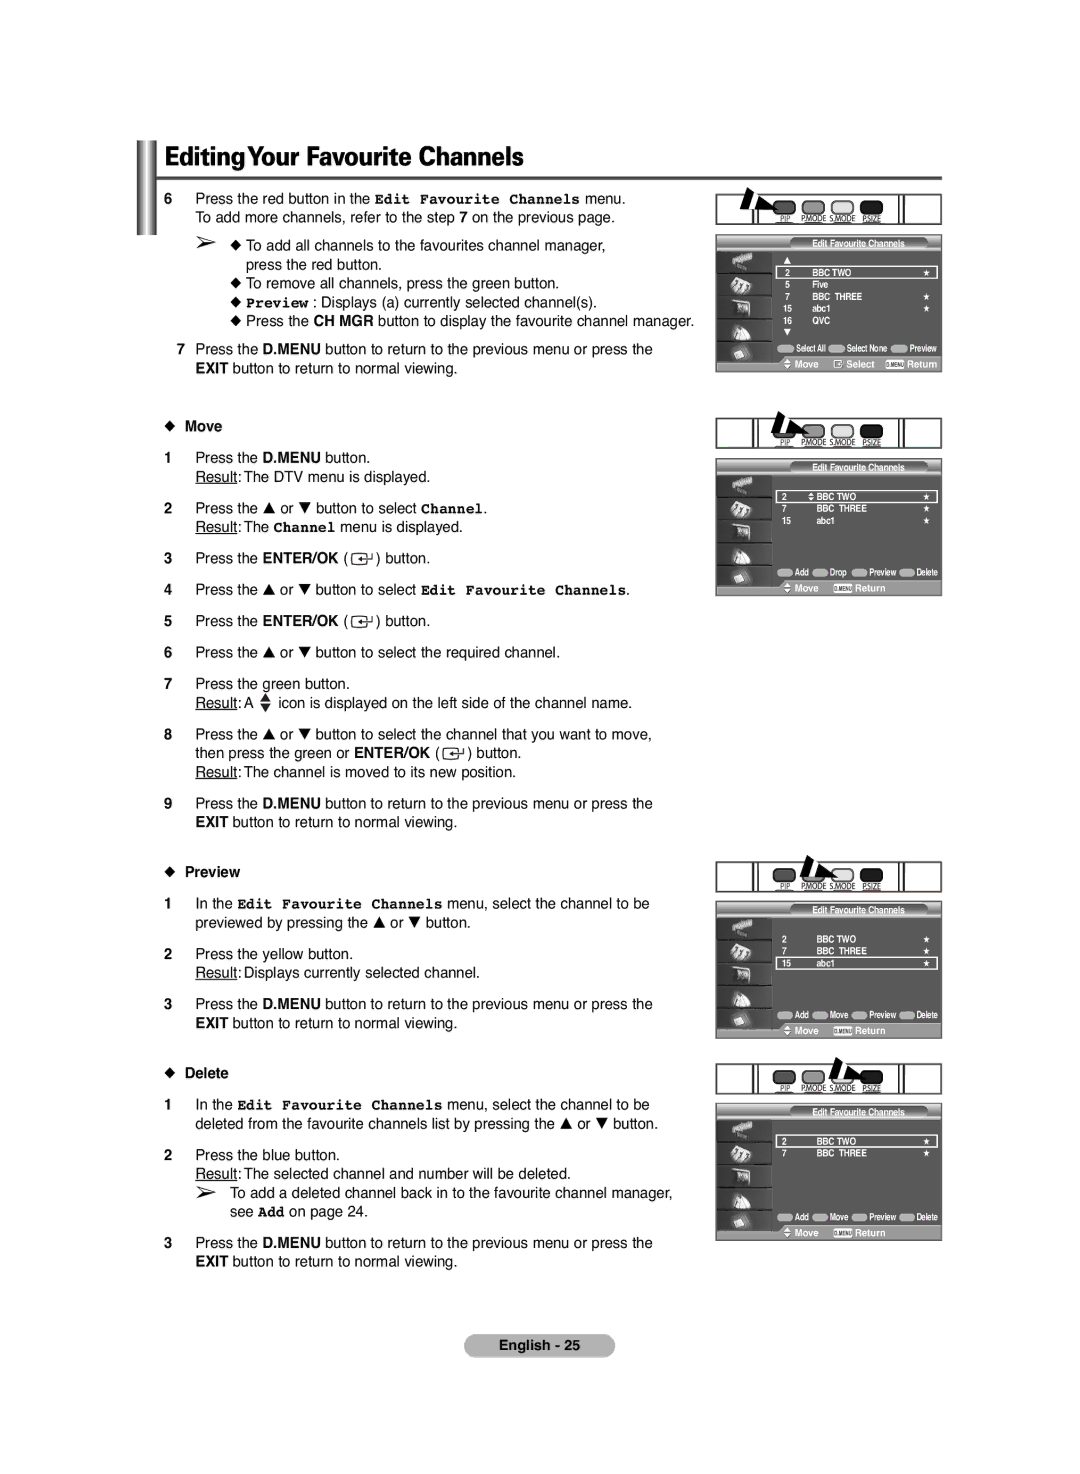 Samsung PS-42C6HD manual Move, Preview, Delete 